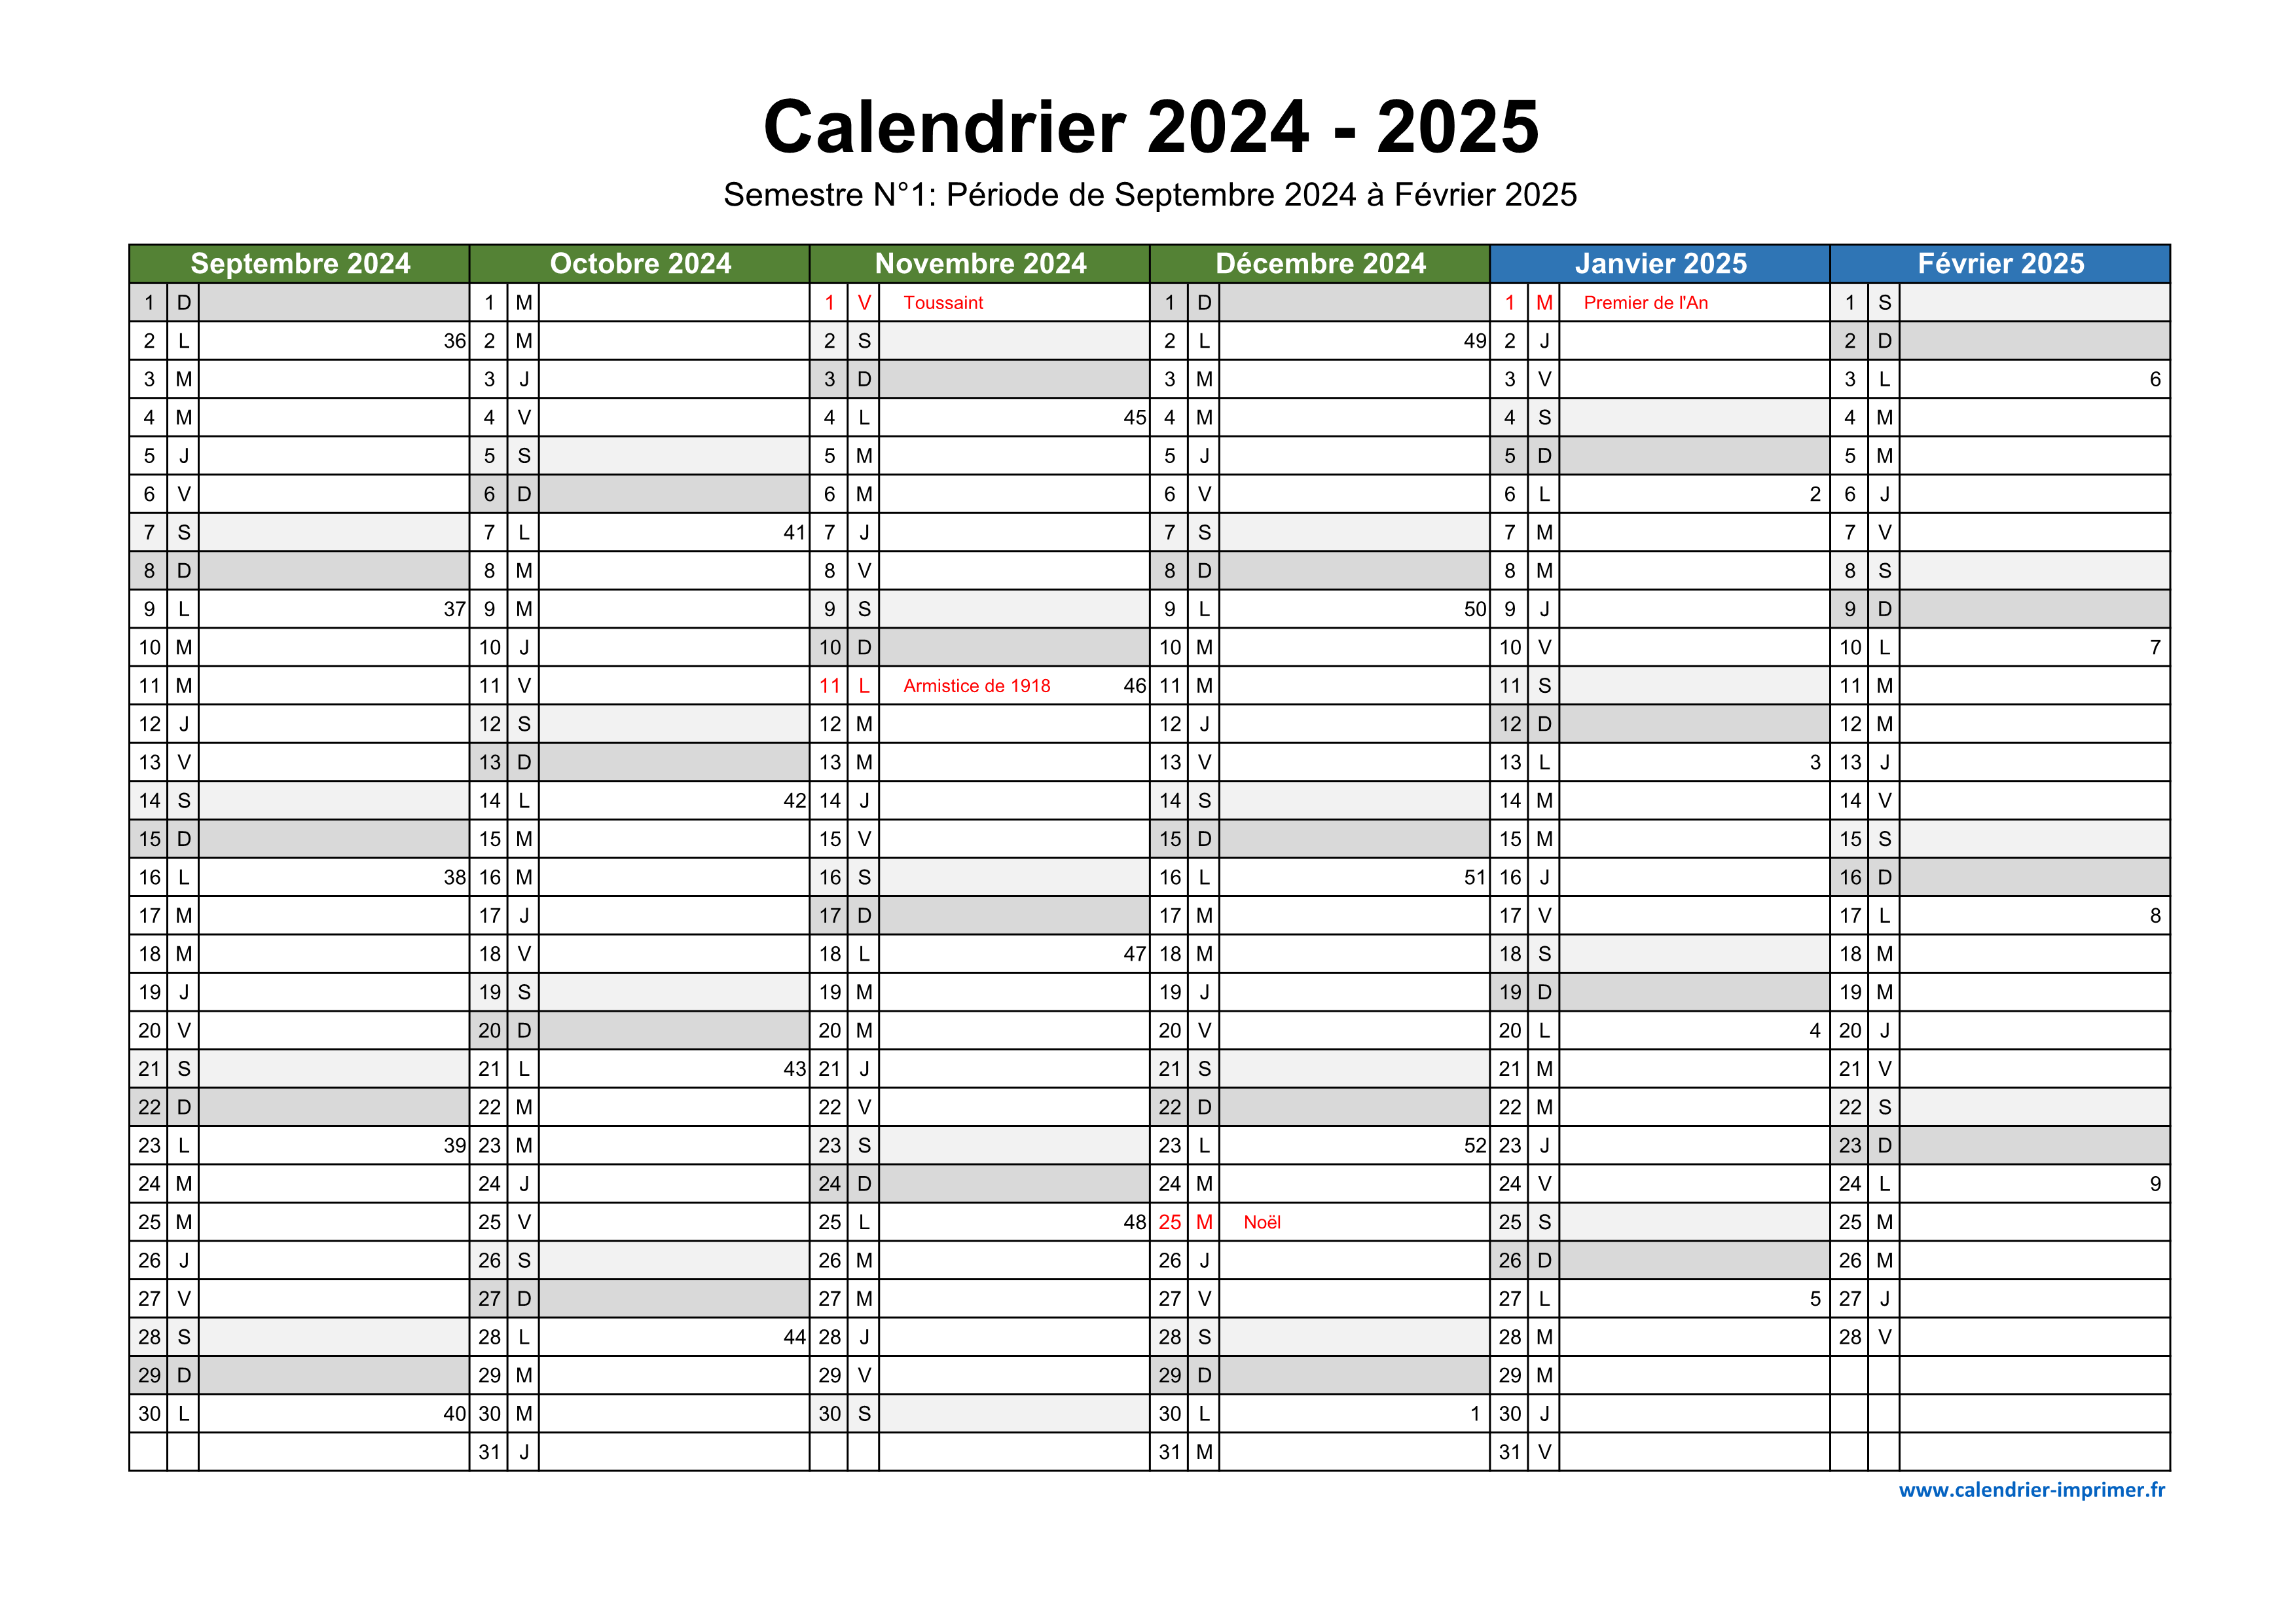 Calendrier 2024-2025 à imprimer